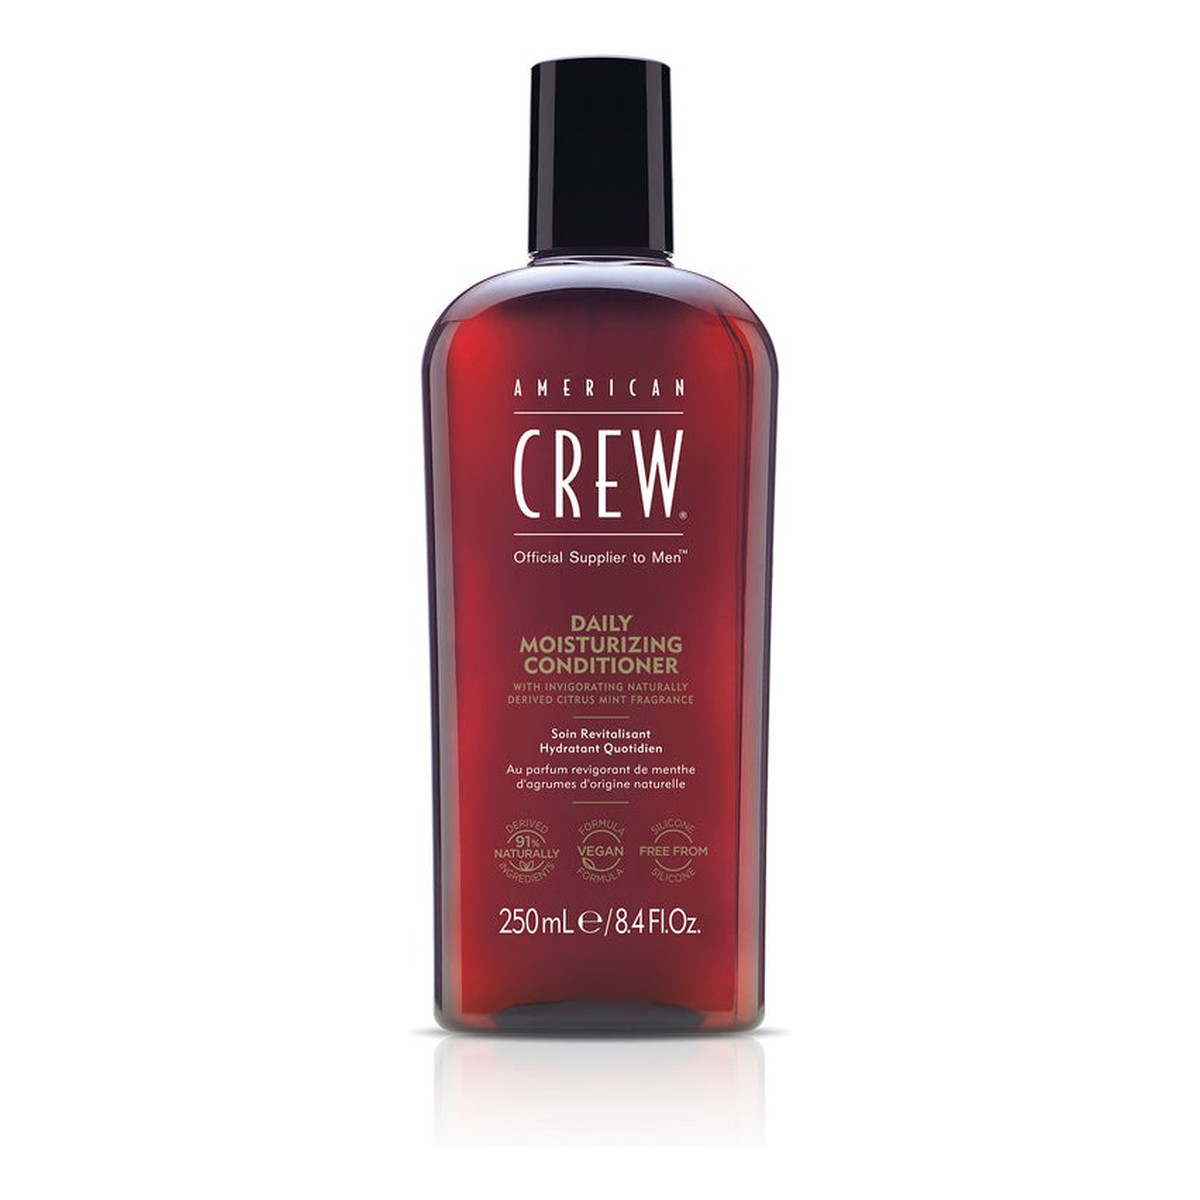 American Crew Daily moisturizing conditioner nawilżająca odżywka do włosów 250ml